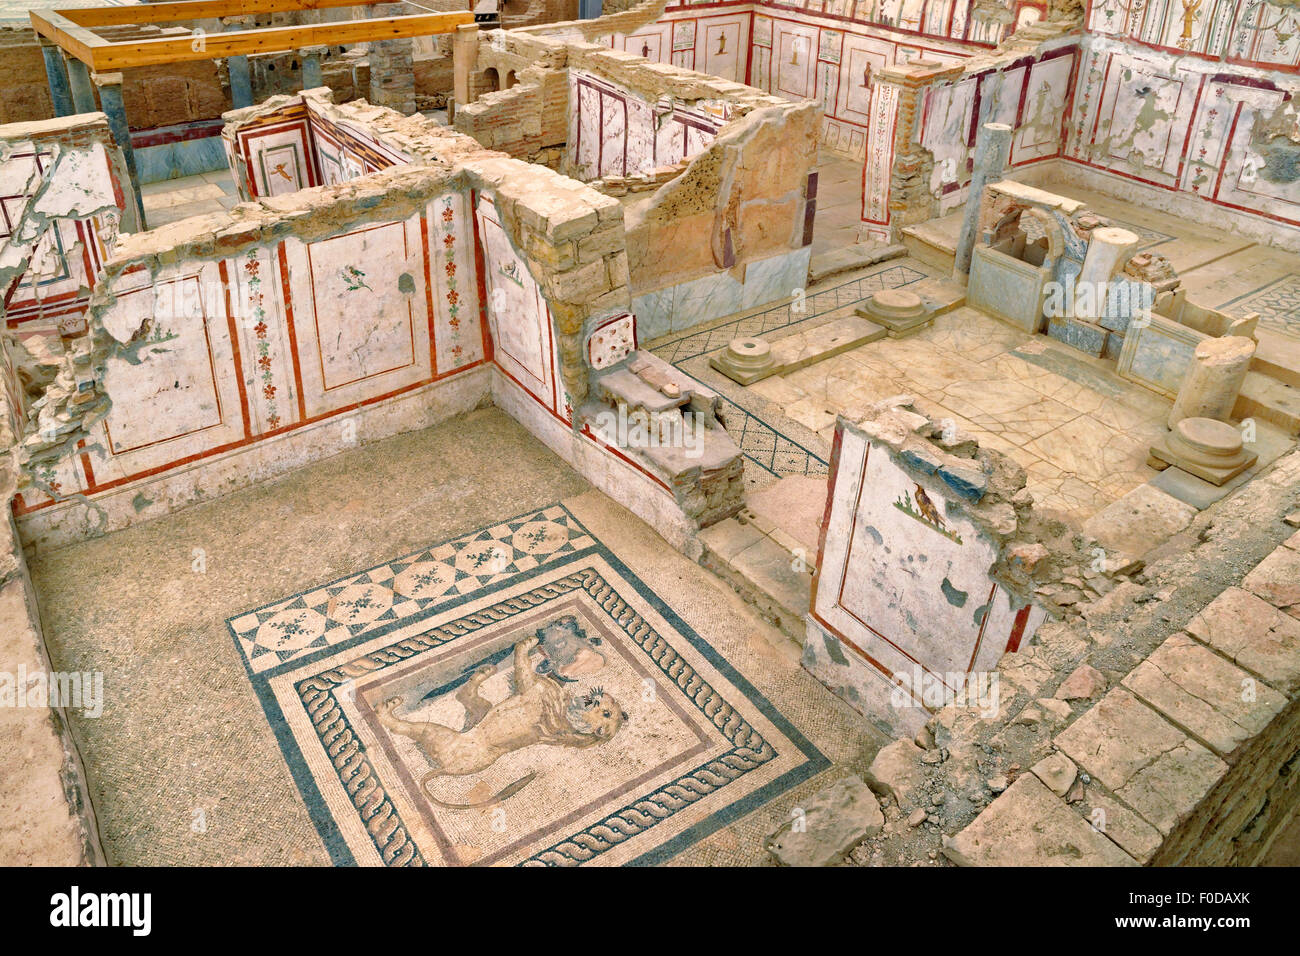 L'intérieur de la maison pour 'couvert' site archéologique de l'ancien grec/Empire romain ville d'Ephèse, Selcuk, Turquie. Banque D'Images